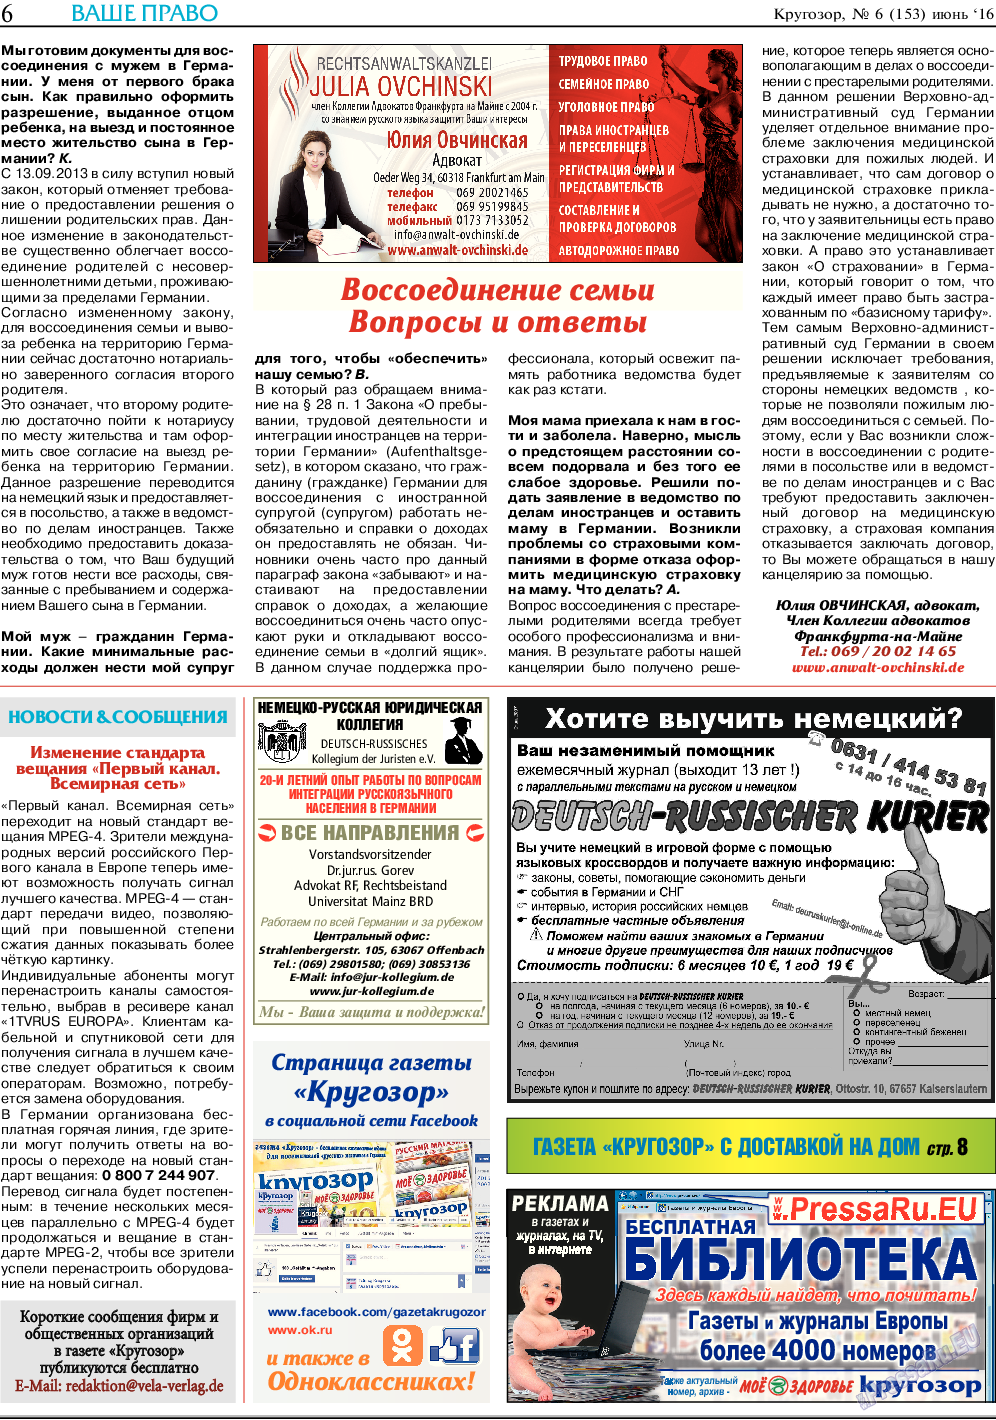 Кругозор (газета). 2016 год, номер 6, стр. 6